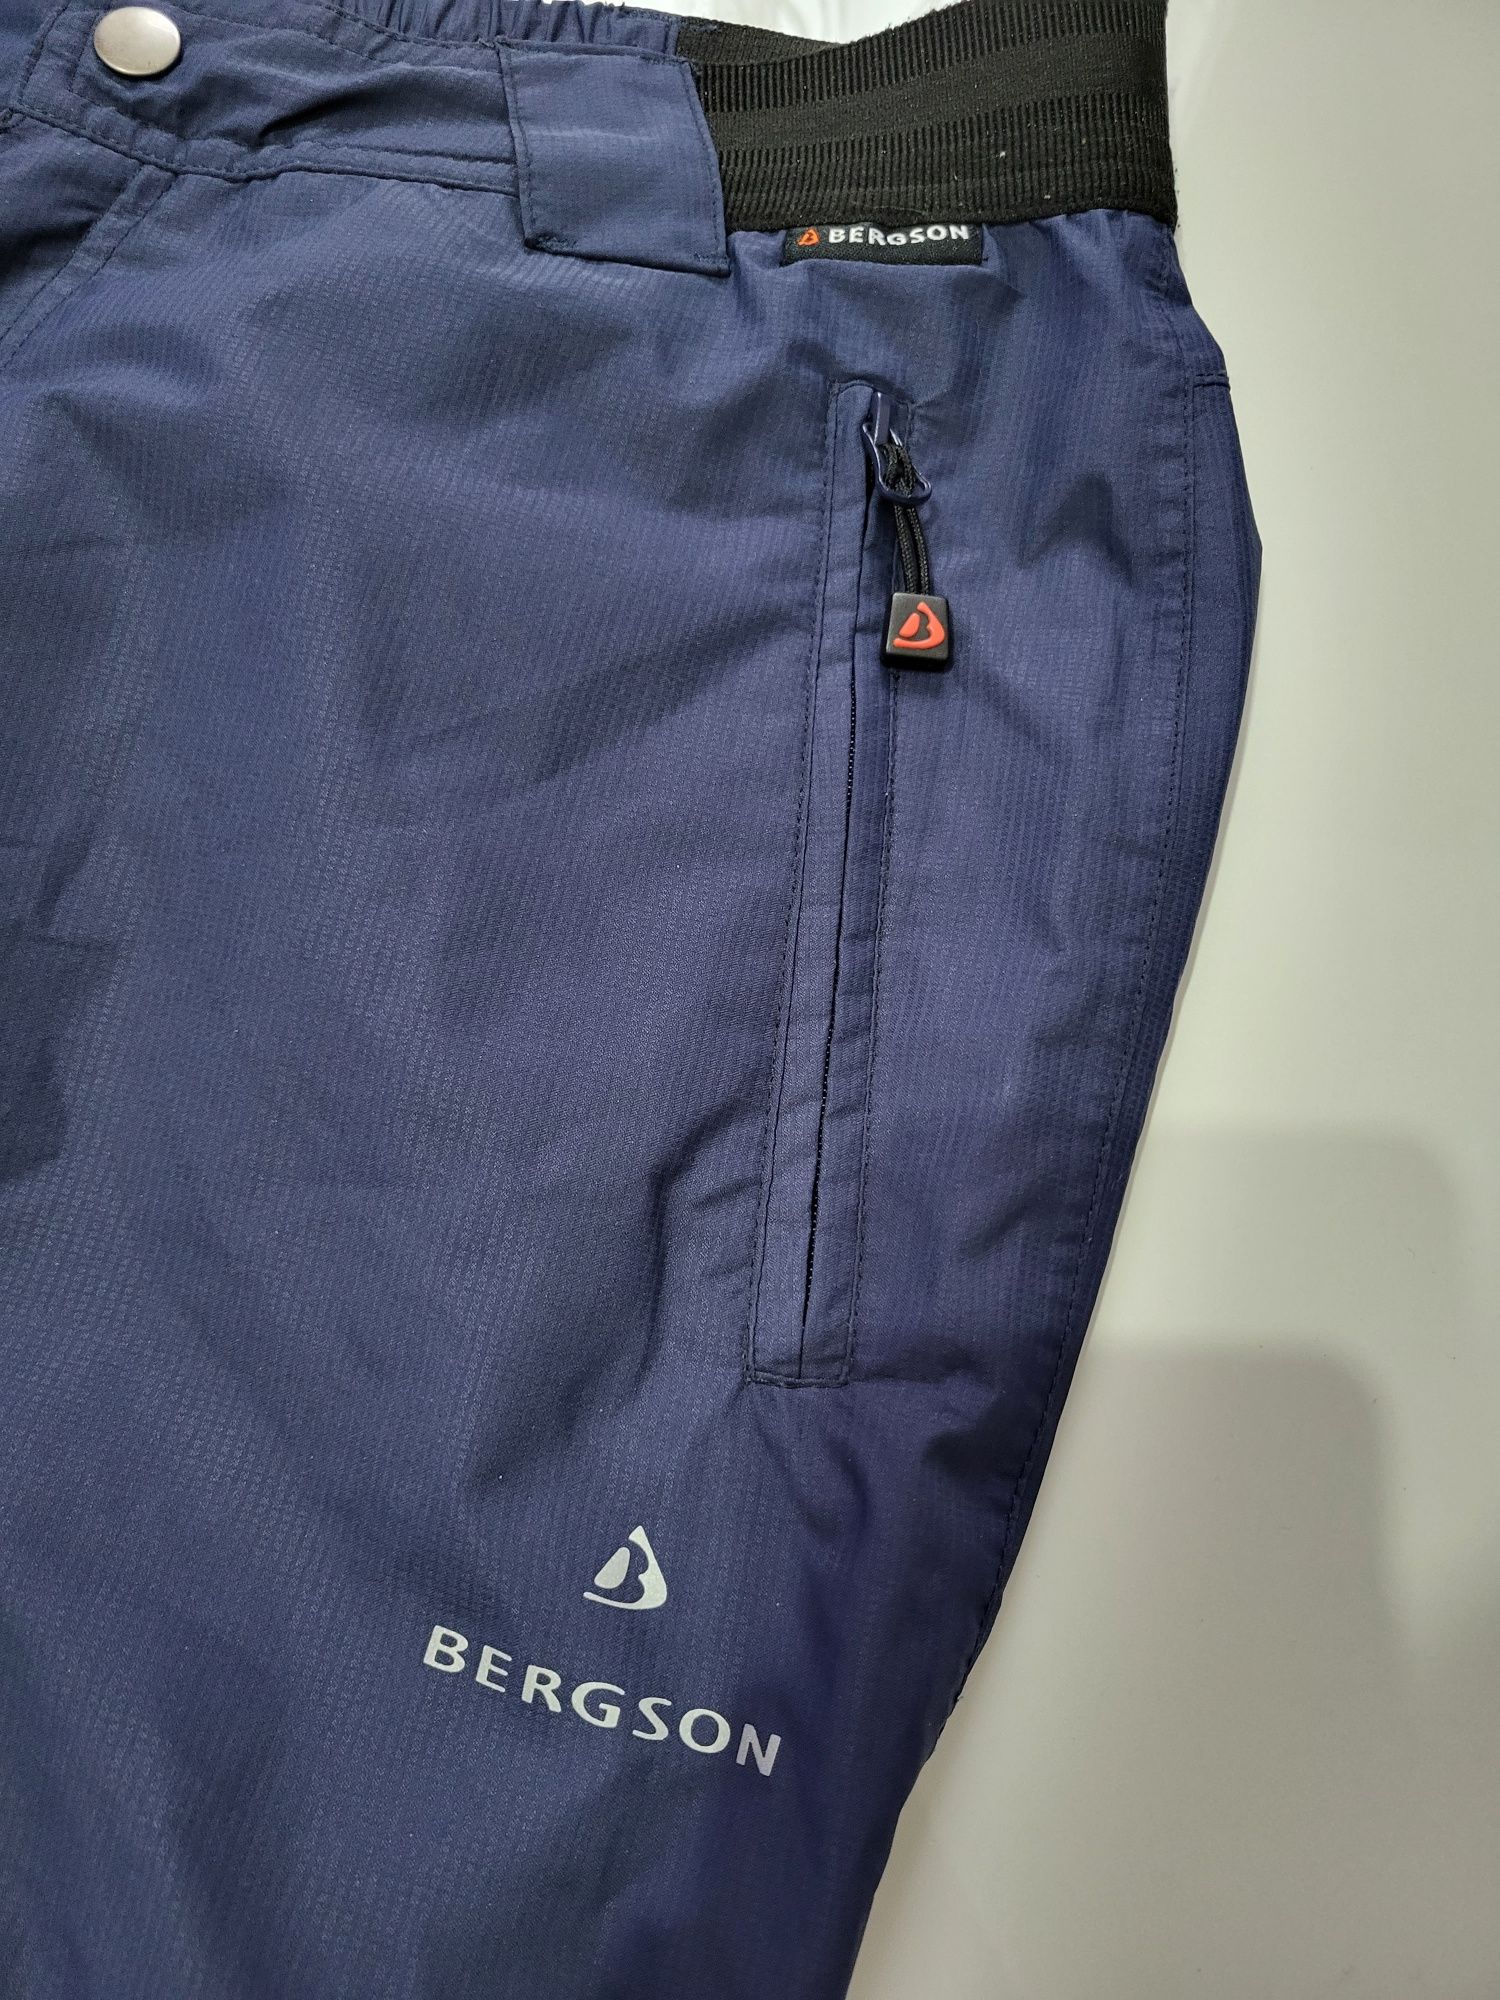 Spodnie turystyczne trekkingowe Bergson supra-tex